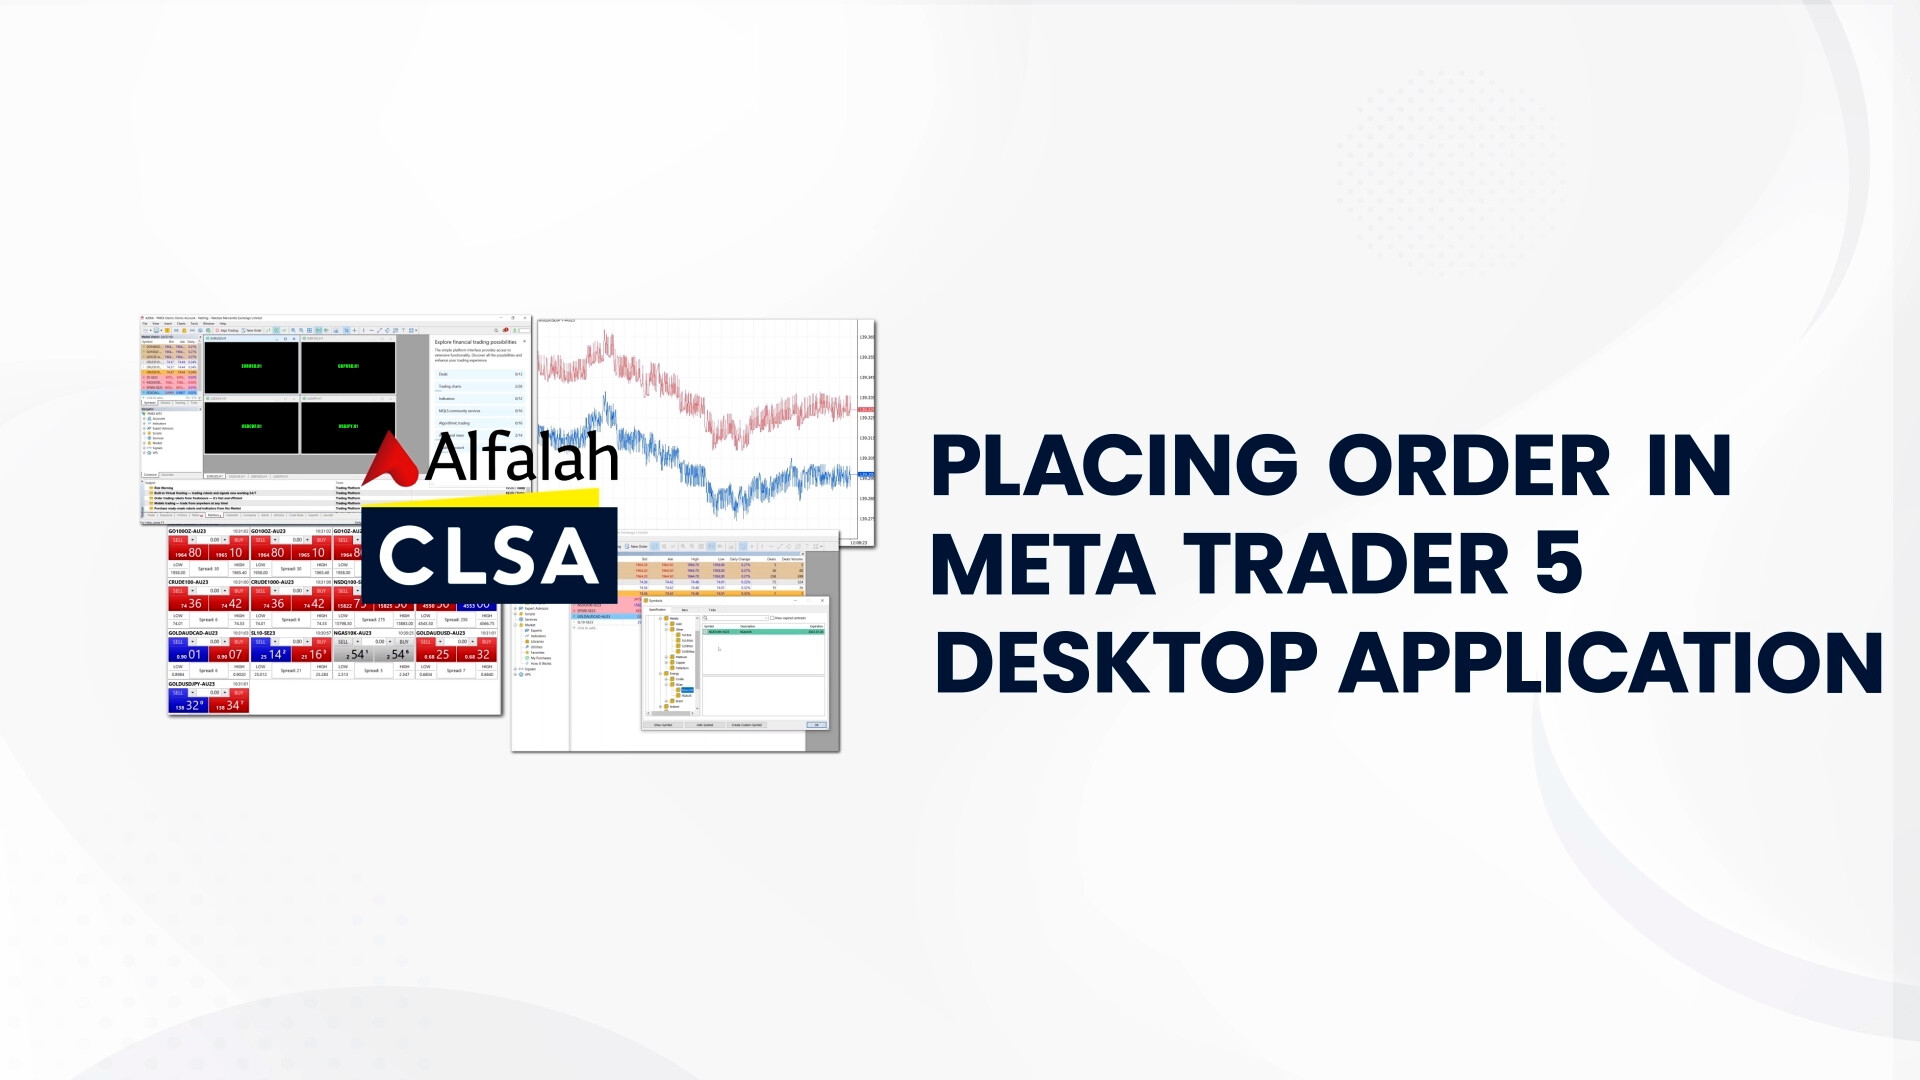 Alfalah CLSA Securities | How to Placing Order In Metatrader 5 (MT5) Desktop Application | Jan 24